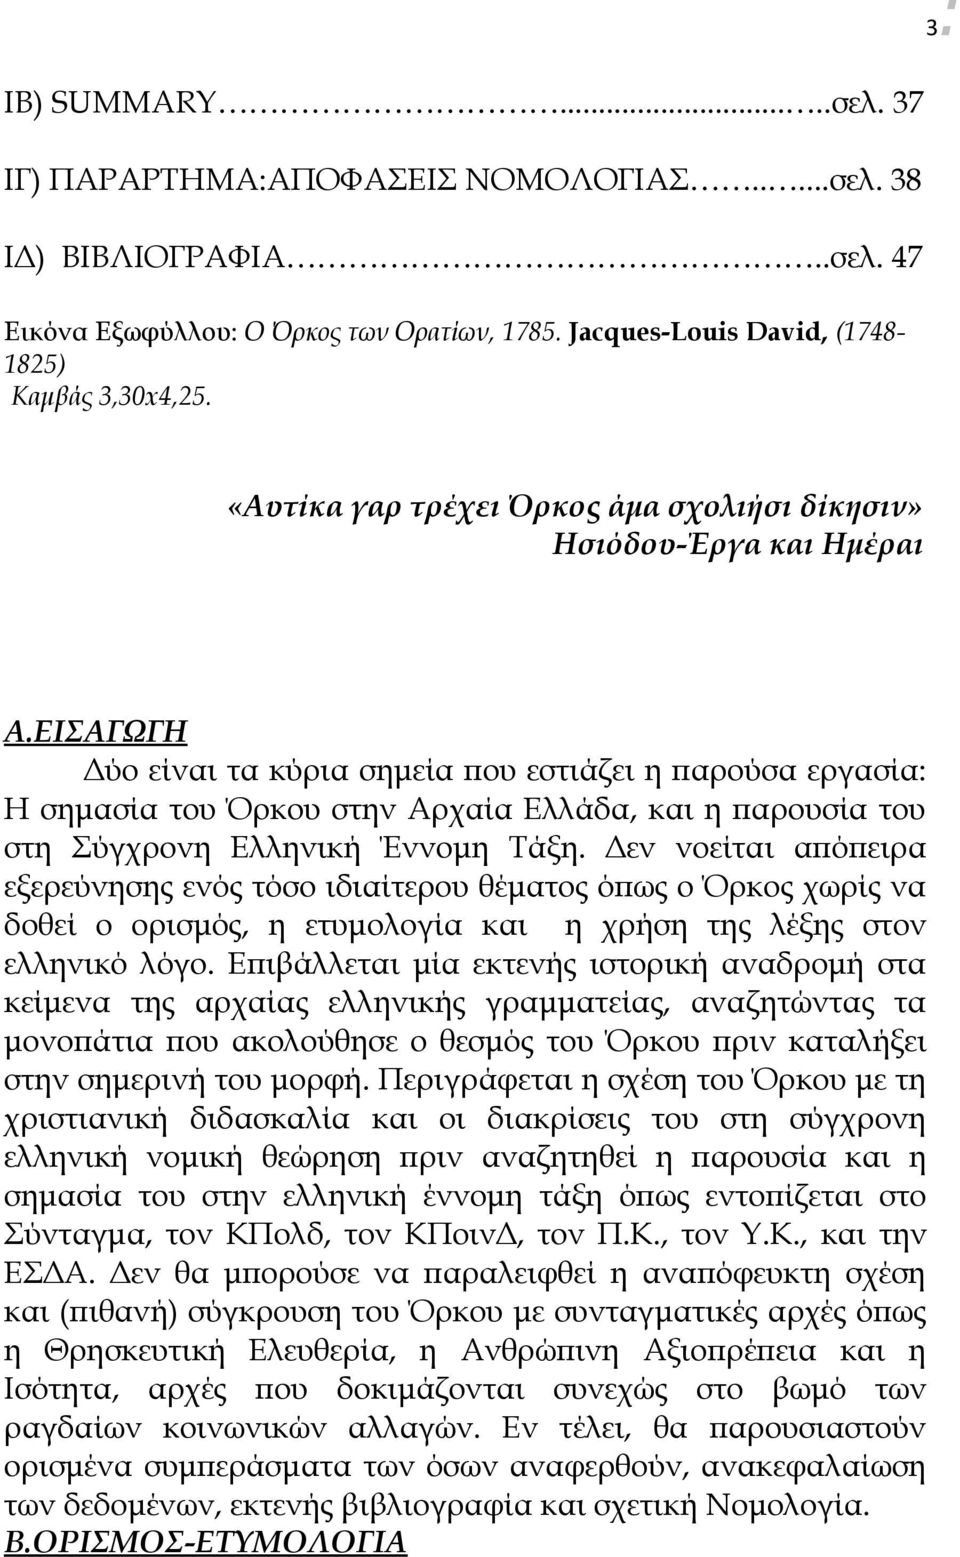 ΕΙΣΑΓΩΓΗ Δύο είναι τα κύρια σημεία που εστιάζει η παρούσα εργασία: Η σημασία του Όρκου στην Αρχαία Ελλάδα, και η παρουσία του στη Σύγχρονη Ελληνική Έννομη Τάξη.